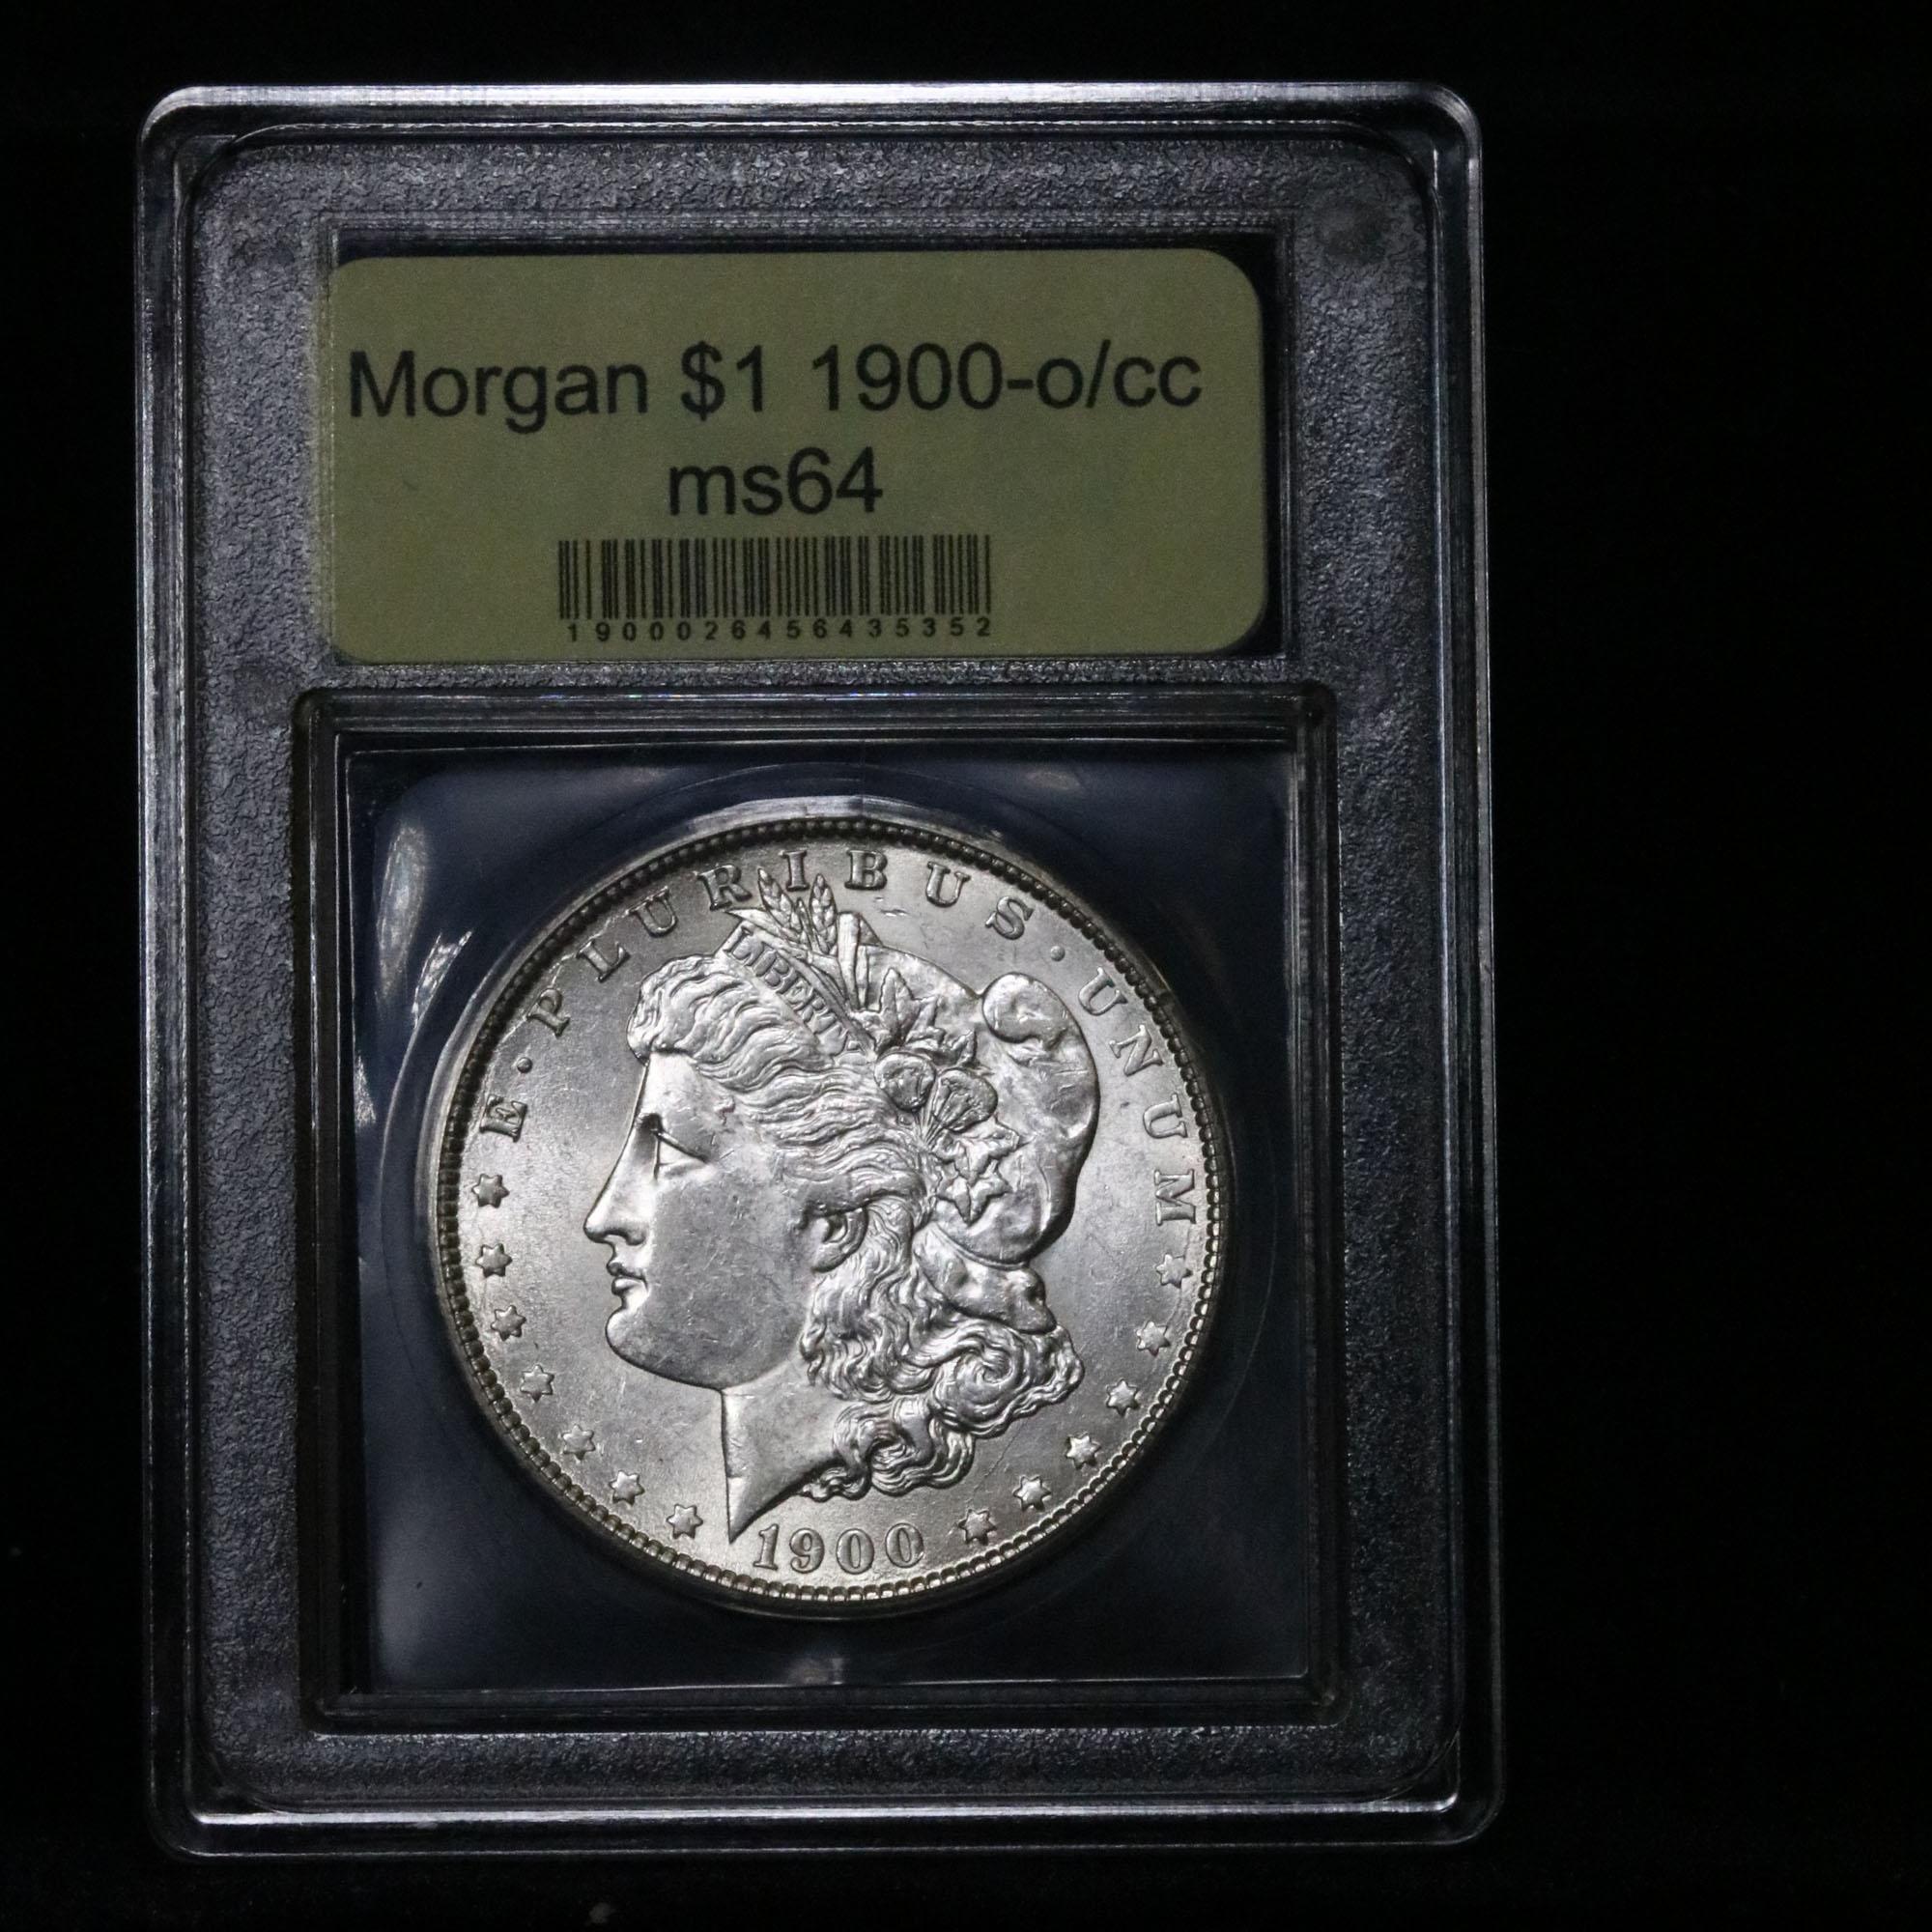 ***Auction Highlight*** 1900-o/cc Morgan Dollar $1 Graded Choice Unc by USCG (fc)